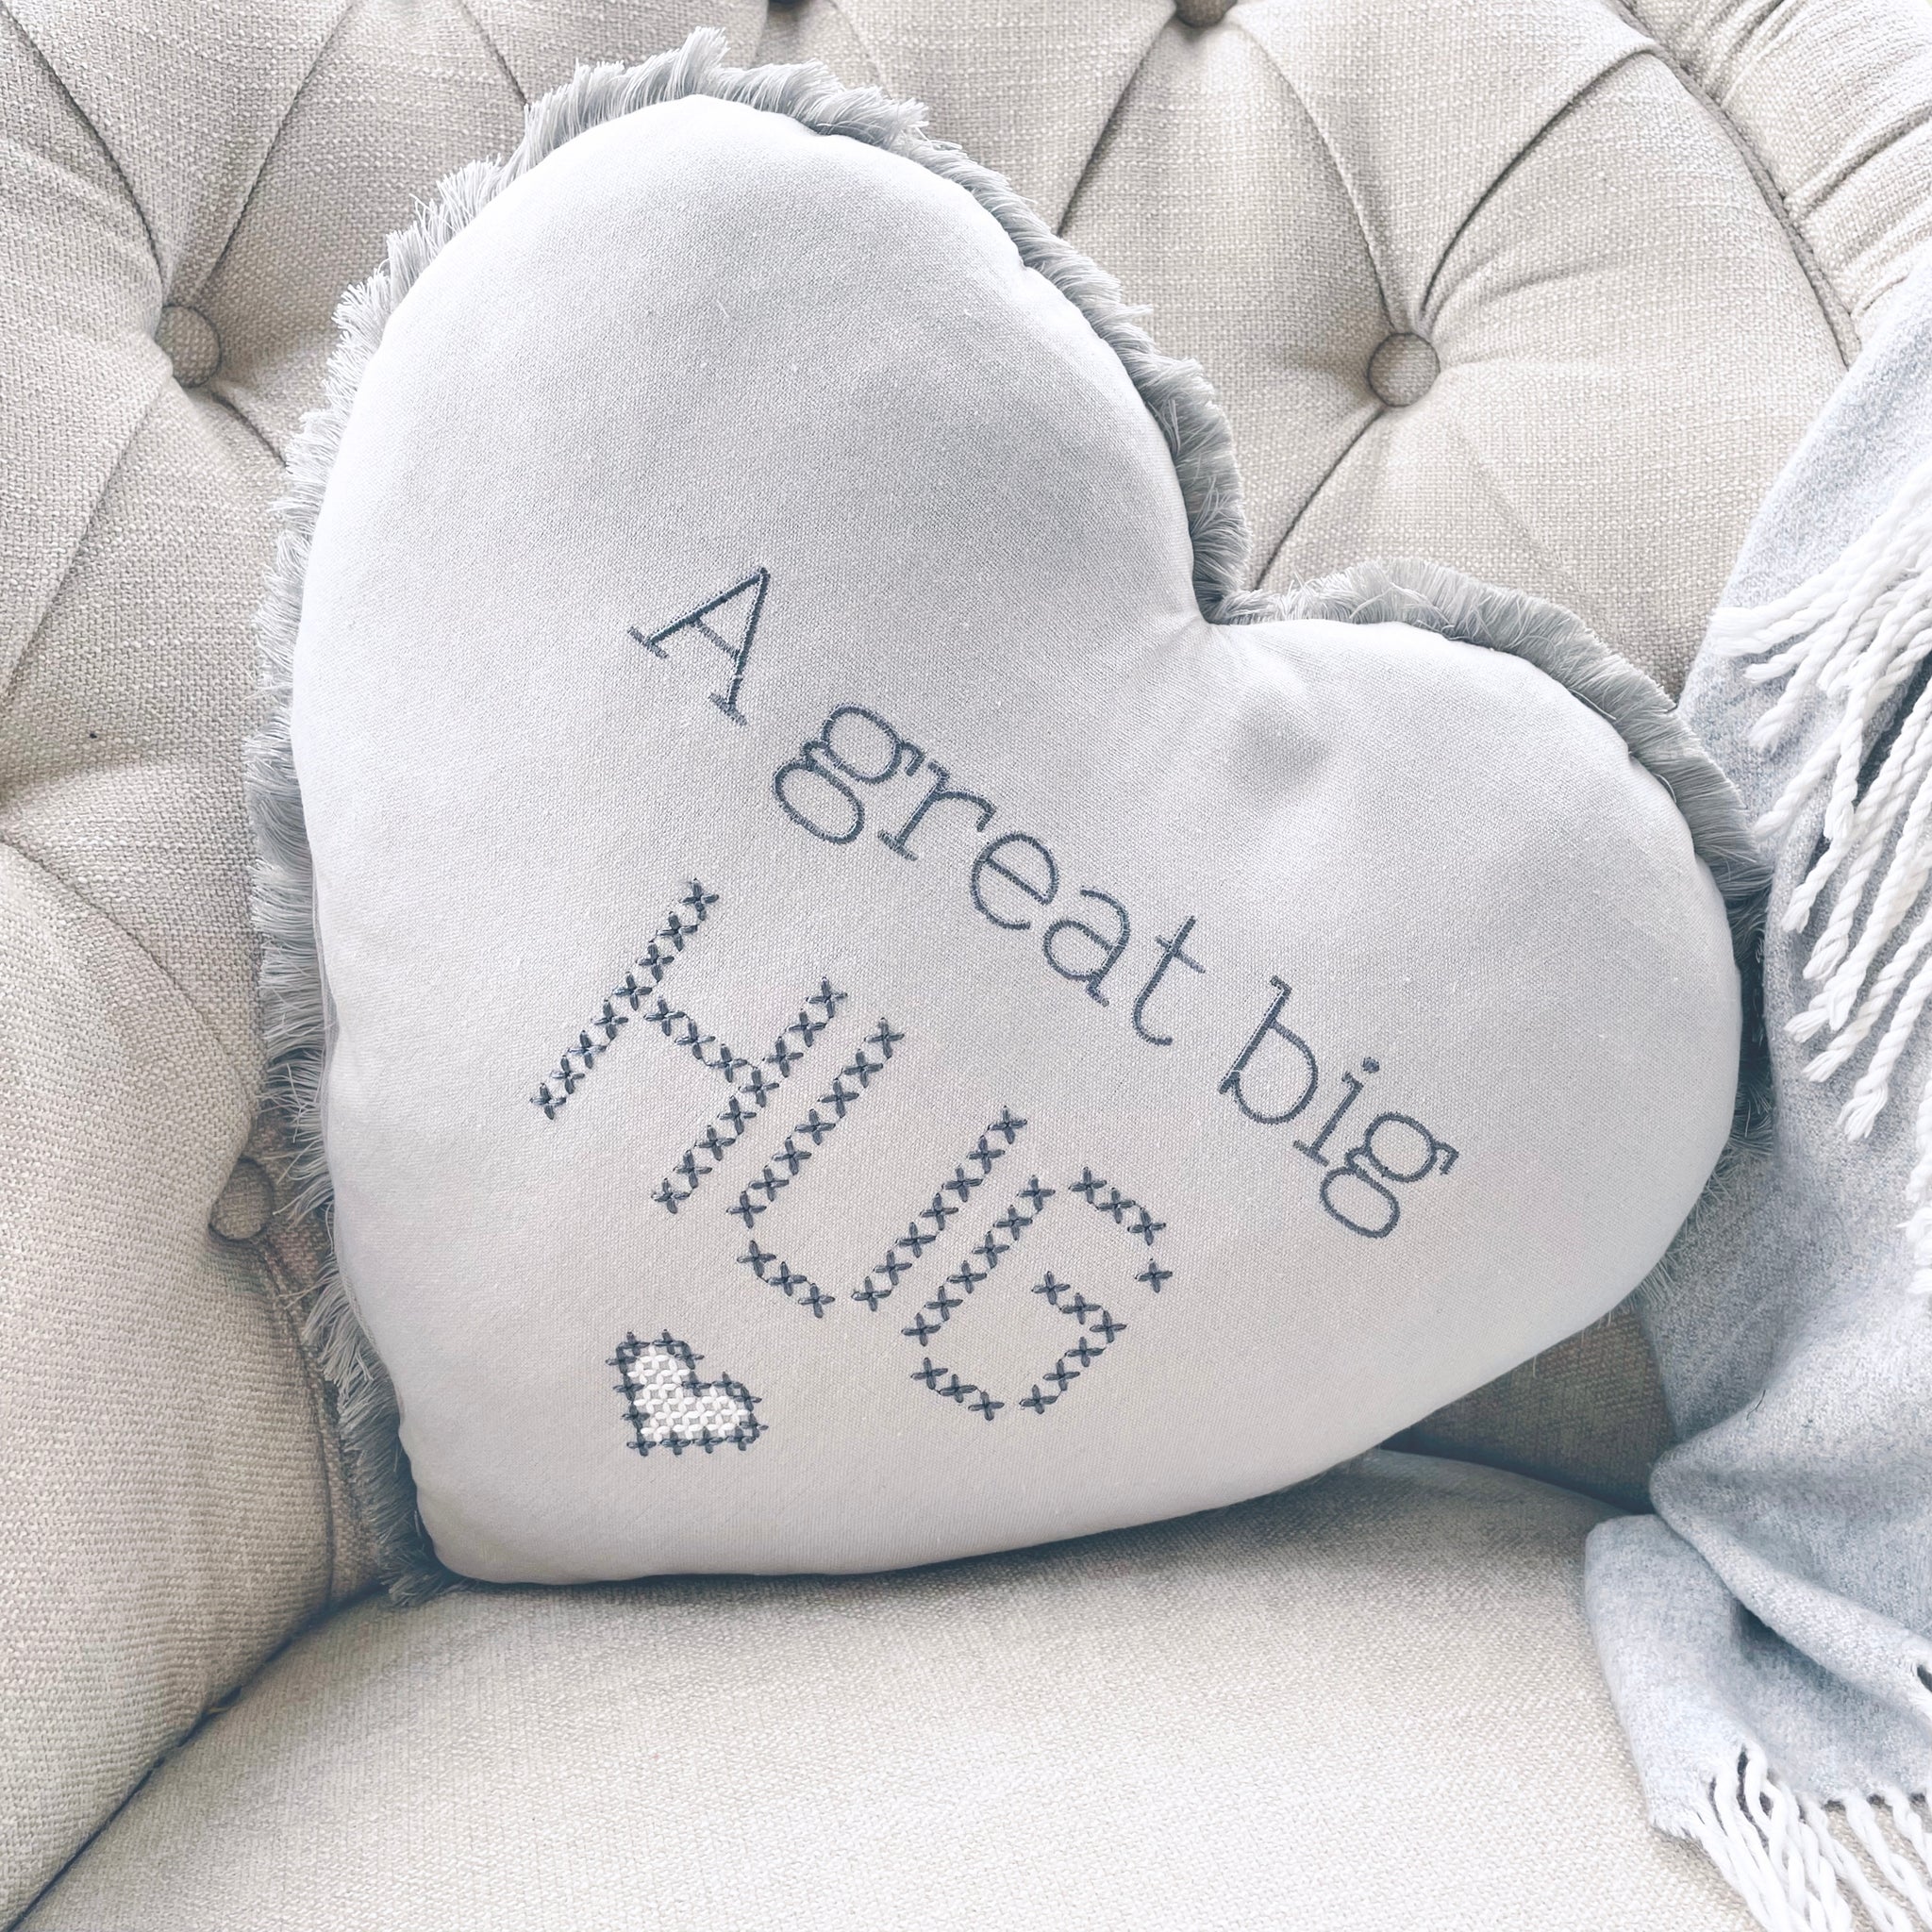 Big Hug Heart Cushion